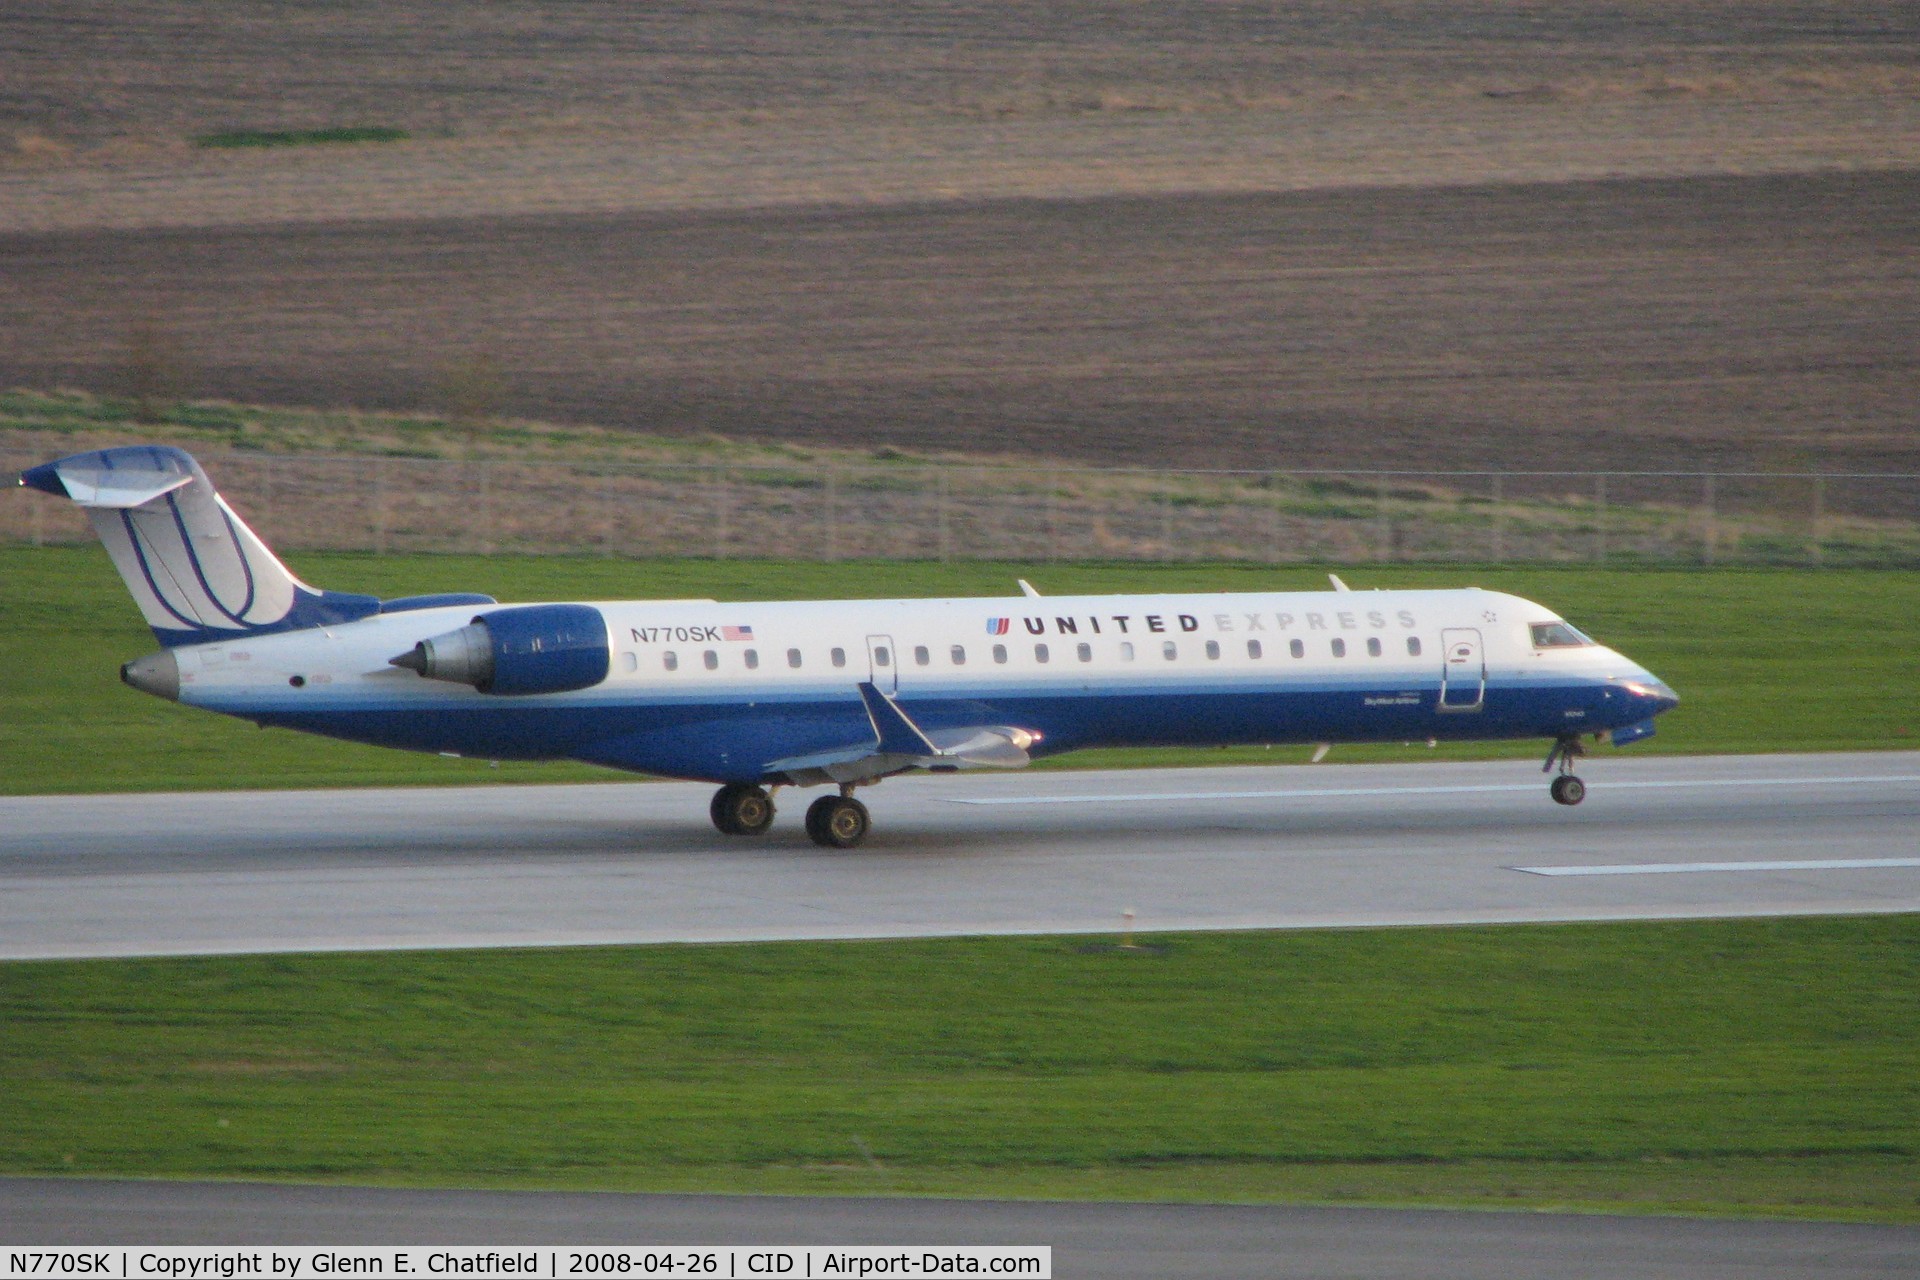 N770SK, 2006 Canadair CL-600-2C10 Regional Jet CRJ-700 C/N 10243, Departing Runway 27, late evening